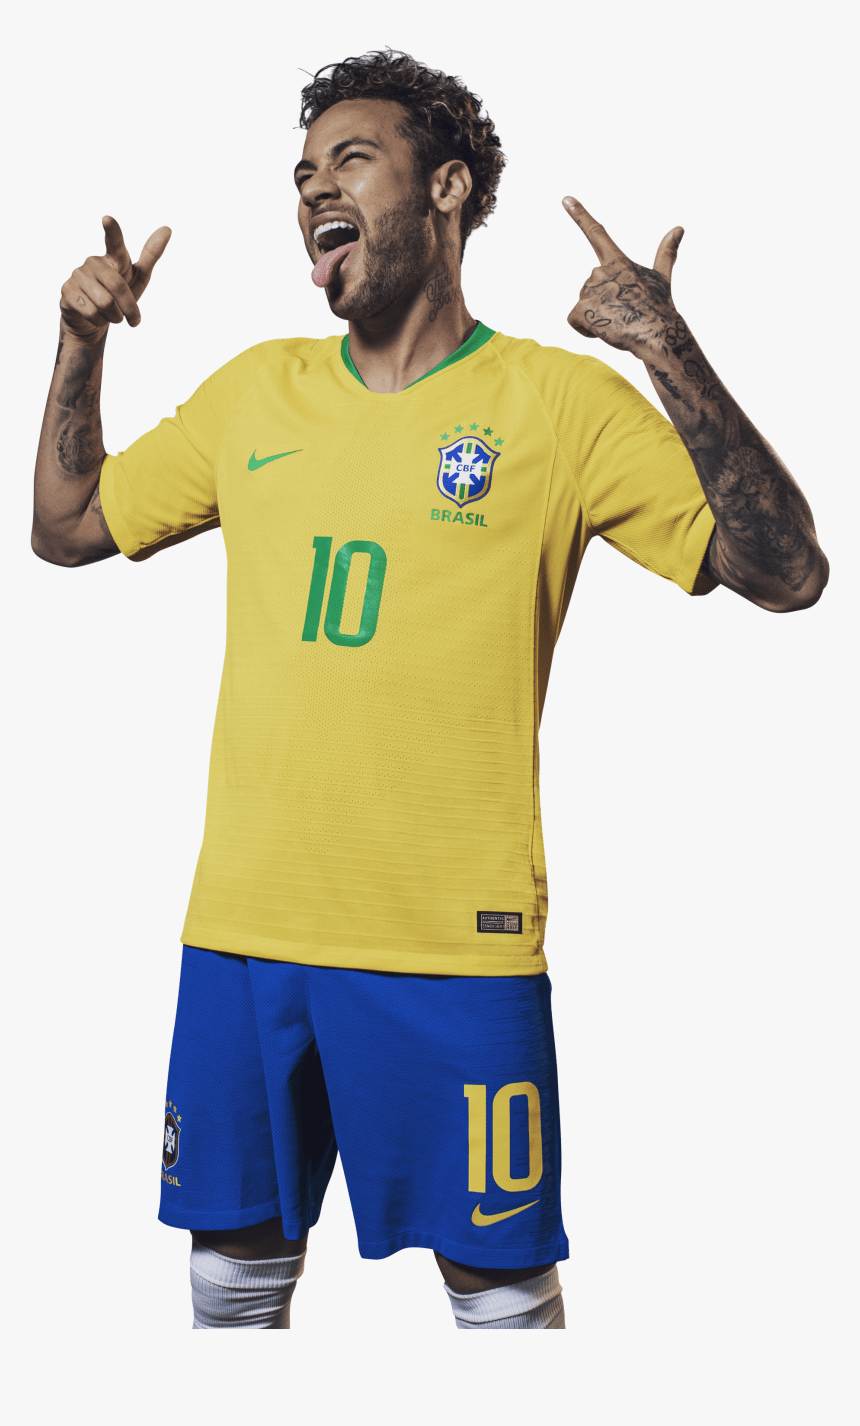 47+] Neymar 2015 Wallpapers - WallpaperSafari